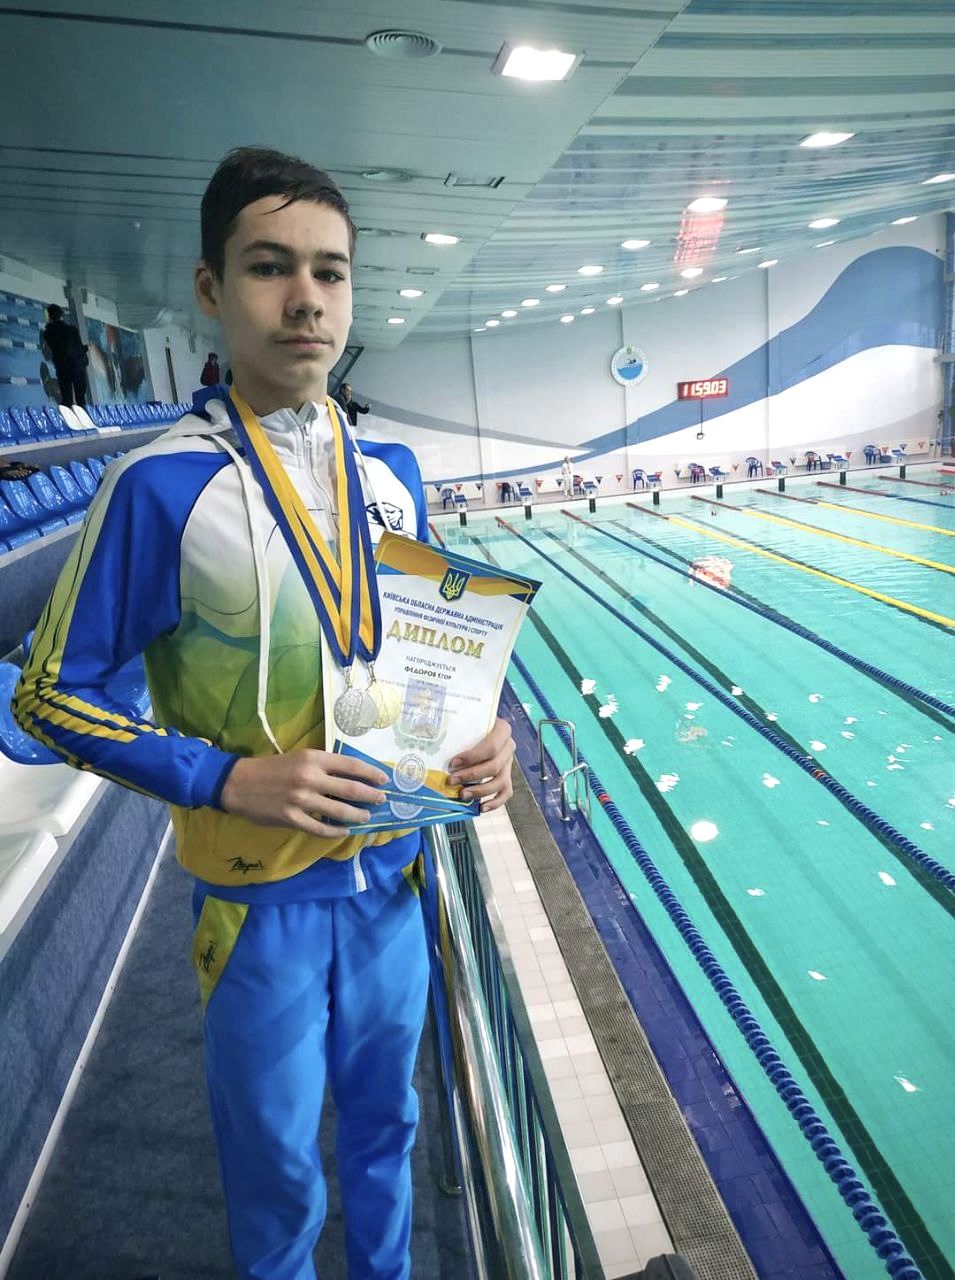 Gutt ved svømmebasseng med medalje og diplom